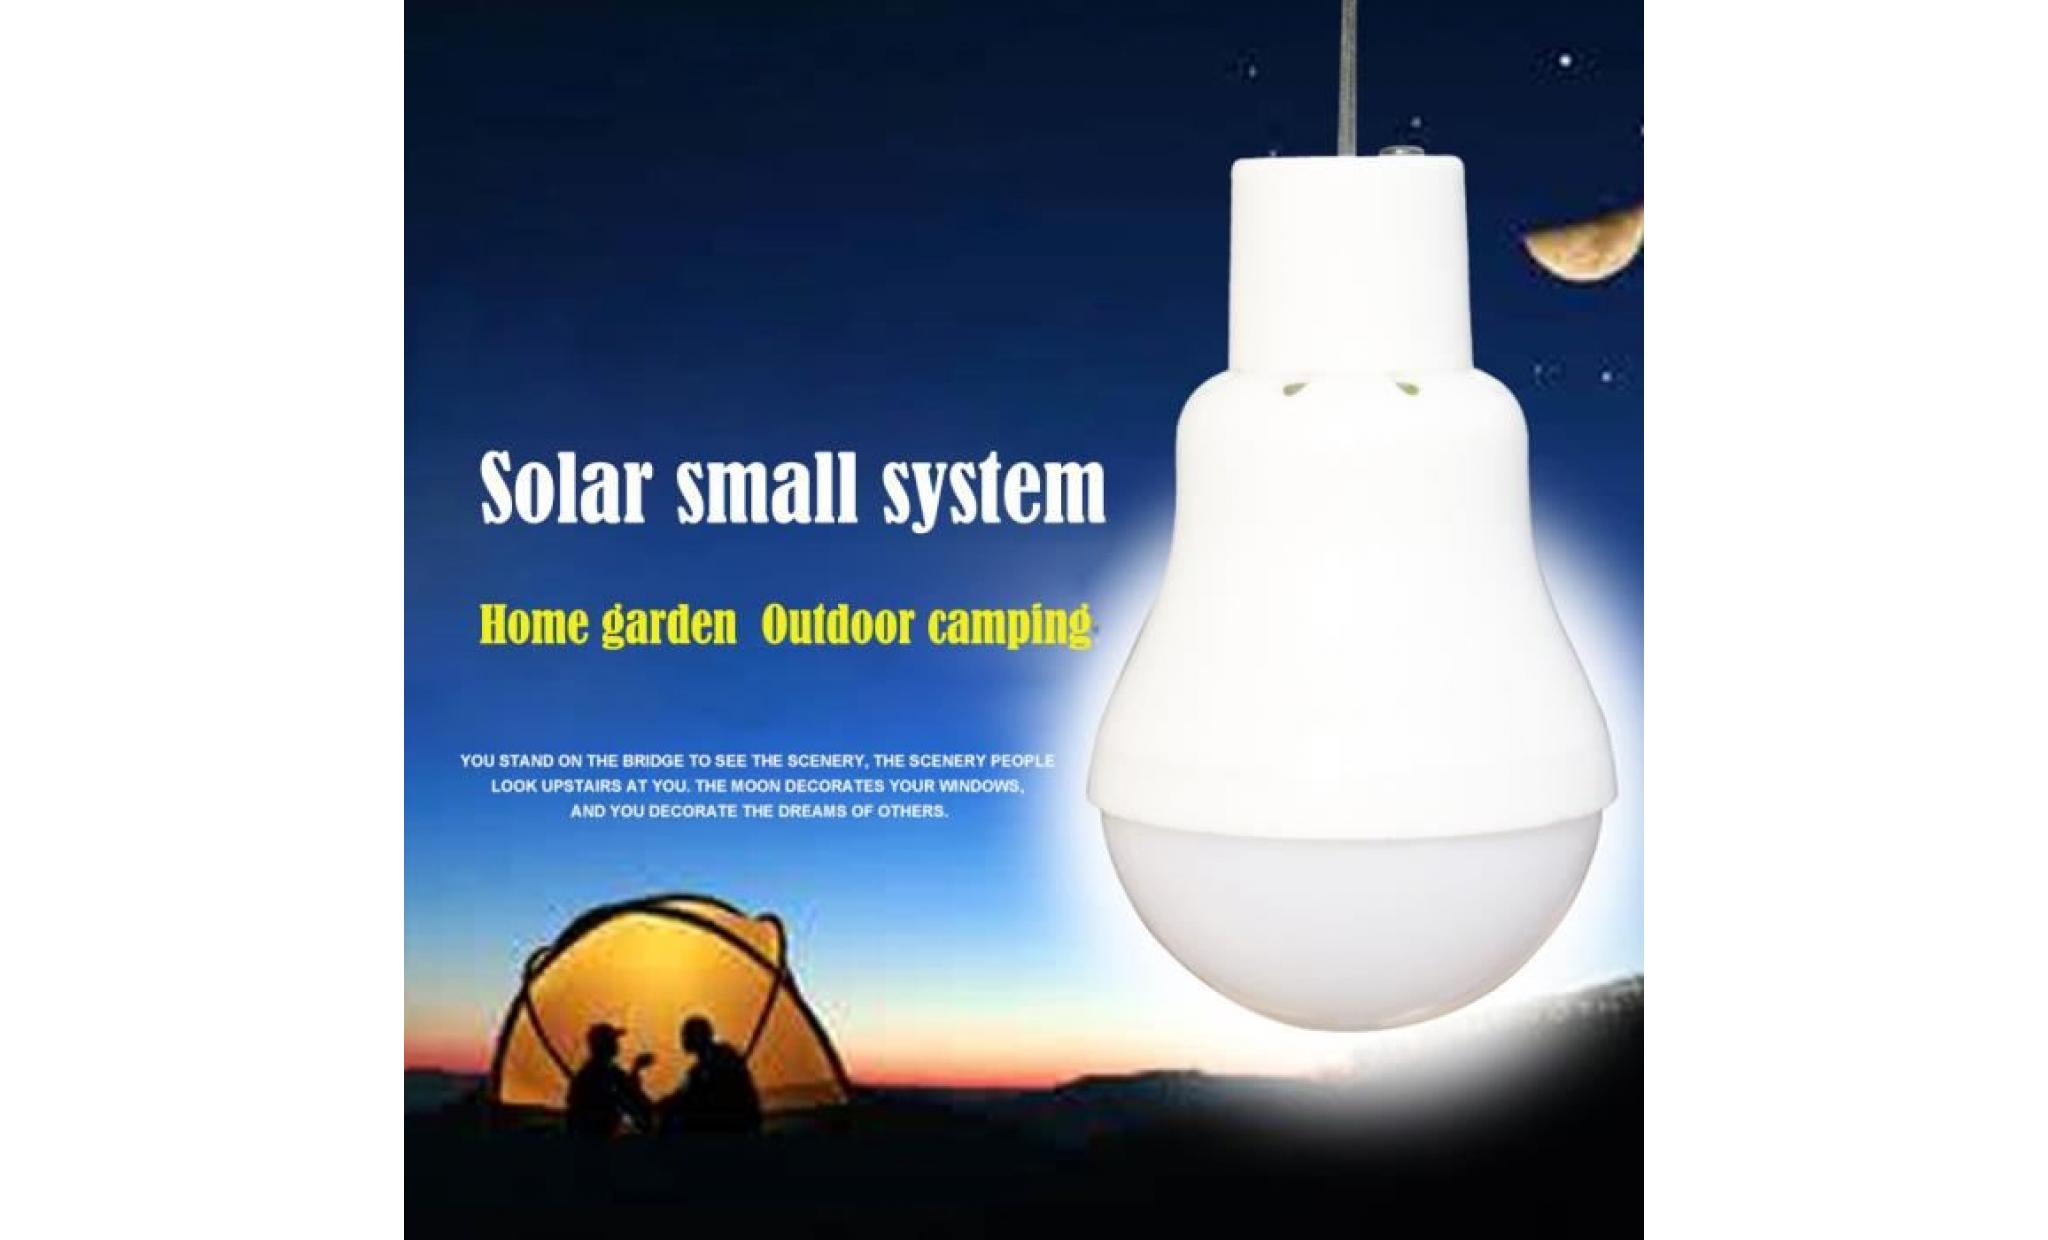 ampoule solaire extérieure powered rechargeable led portable lumière camping lampe de jardin li491502 pas cher